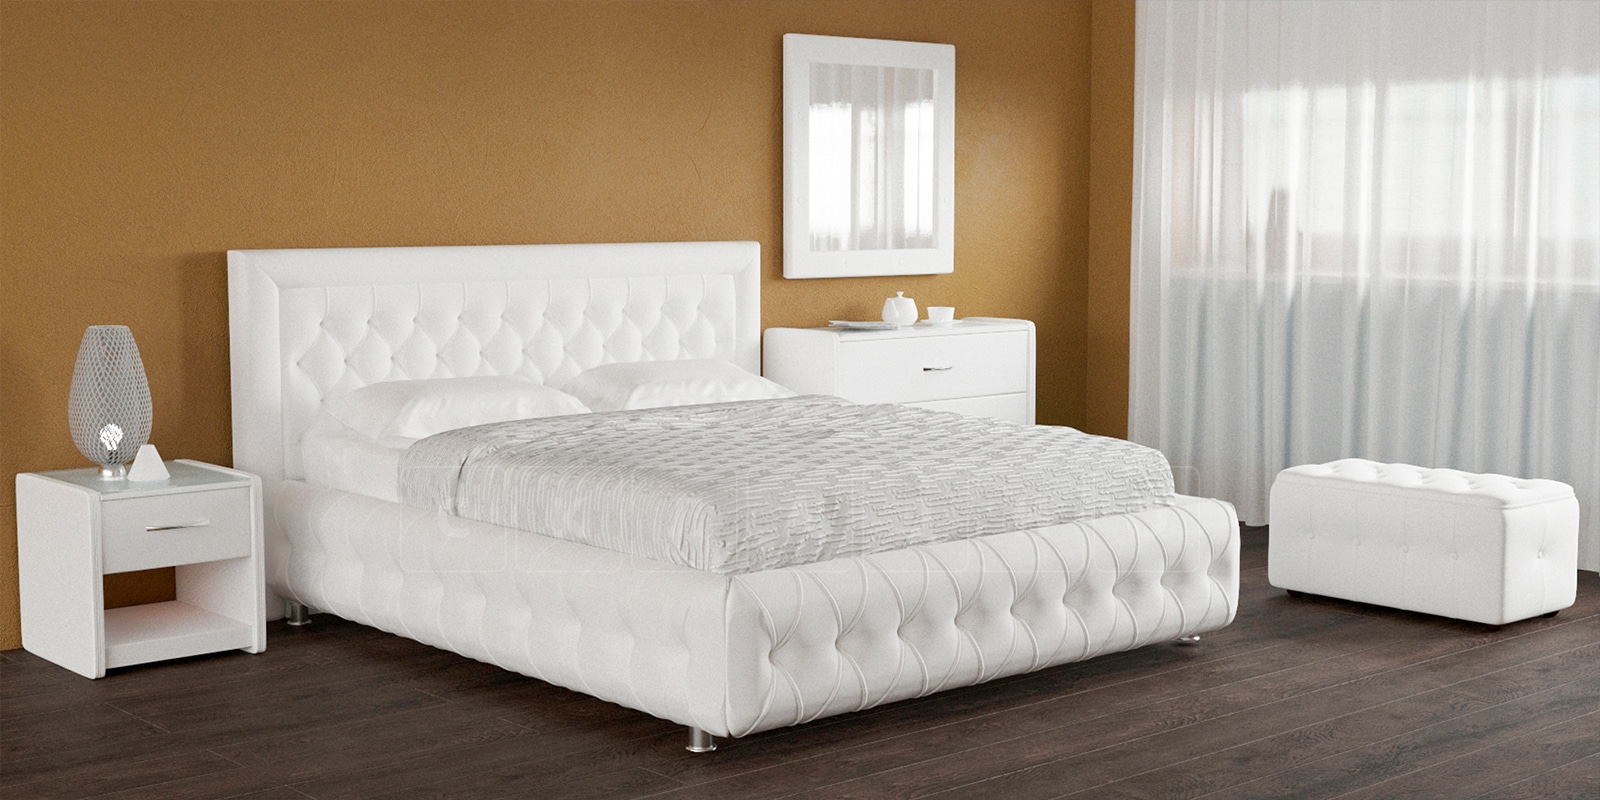 Мягкая кровать Малибу 160 см экокожа белого цвета вариант 7-2 фото 5 | интернет-магазин Складно